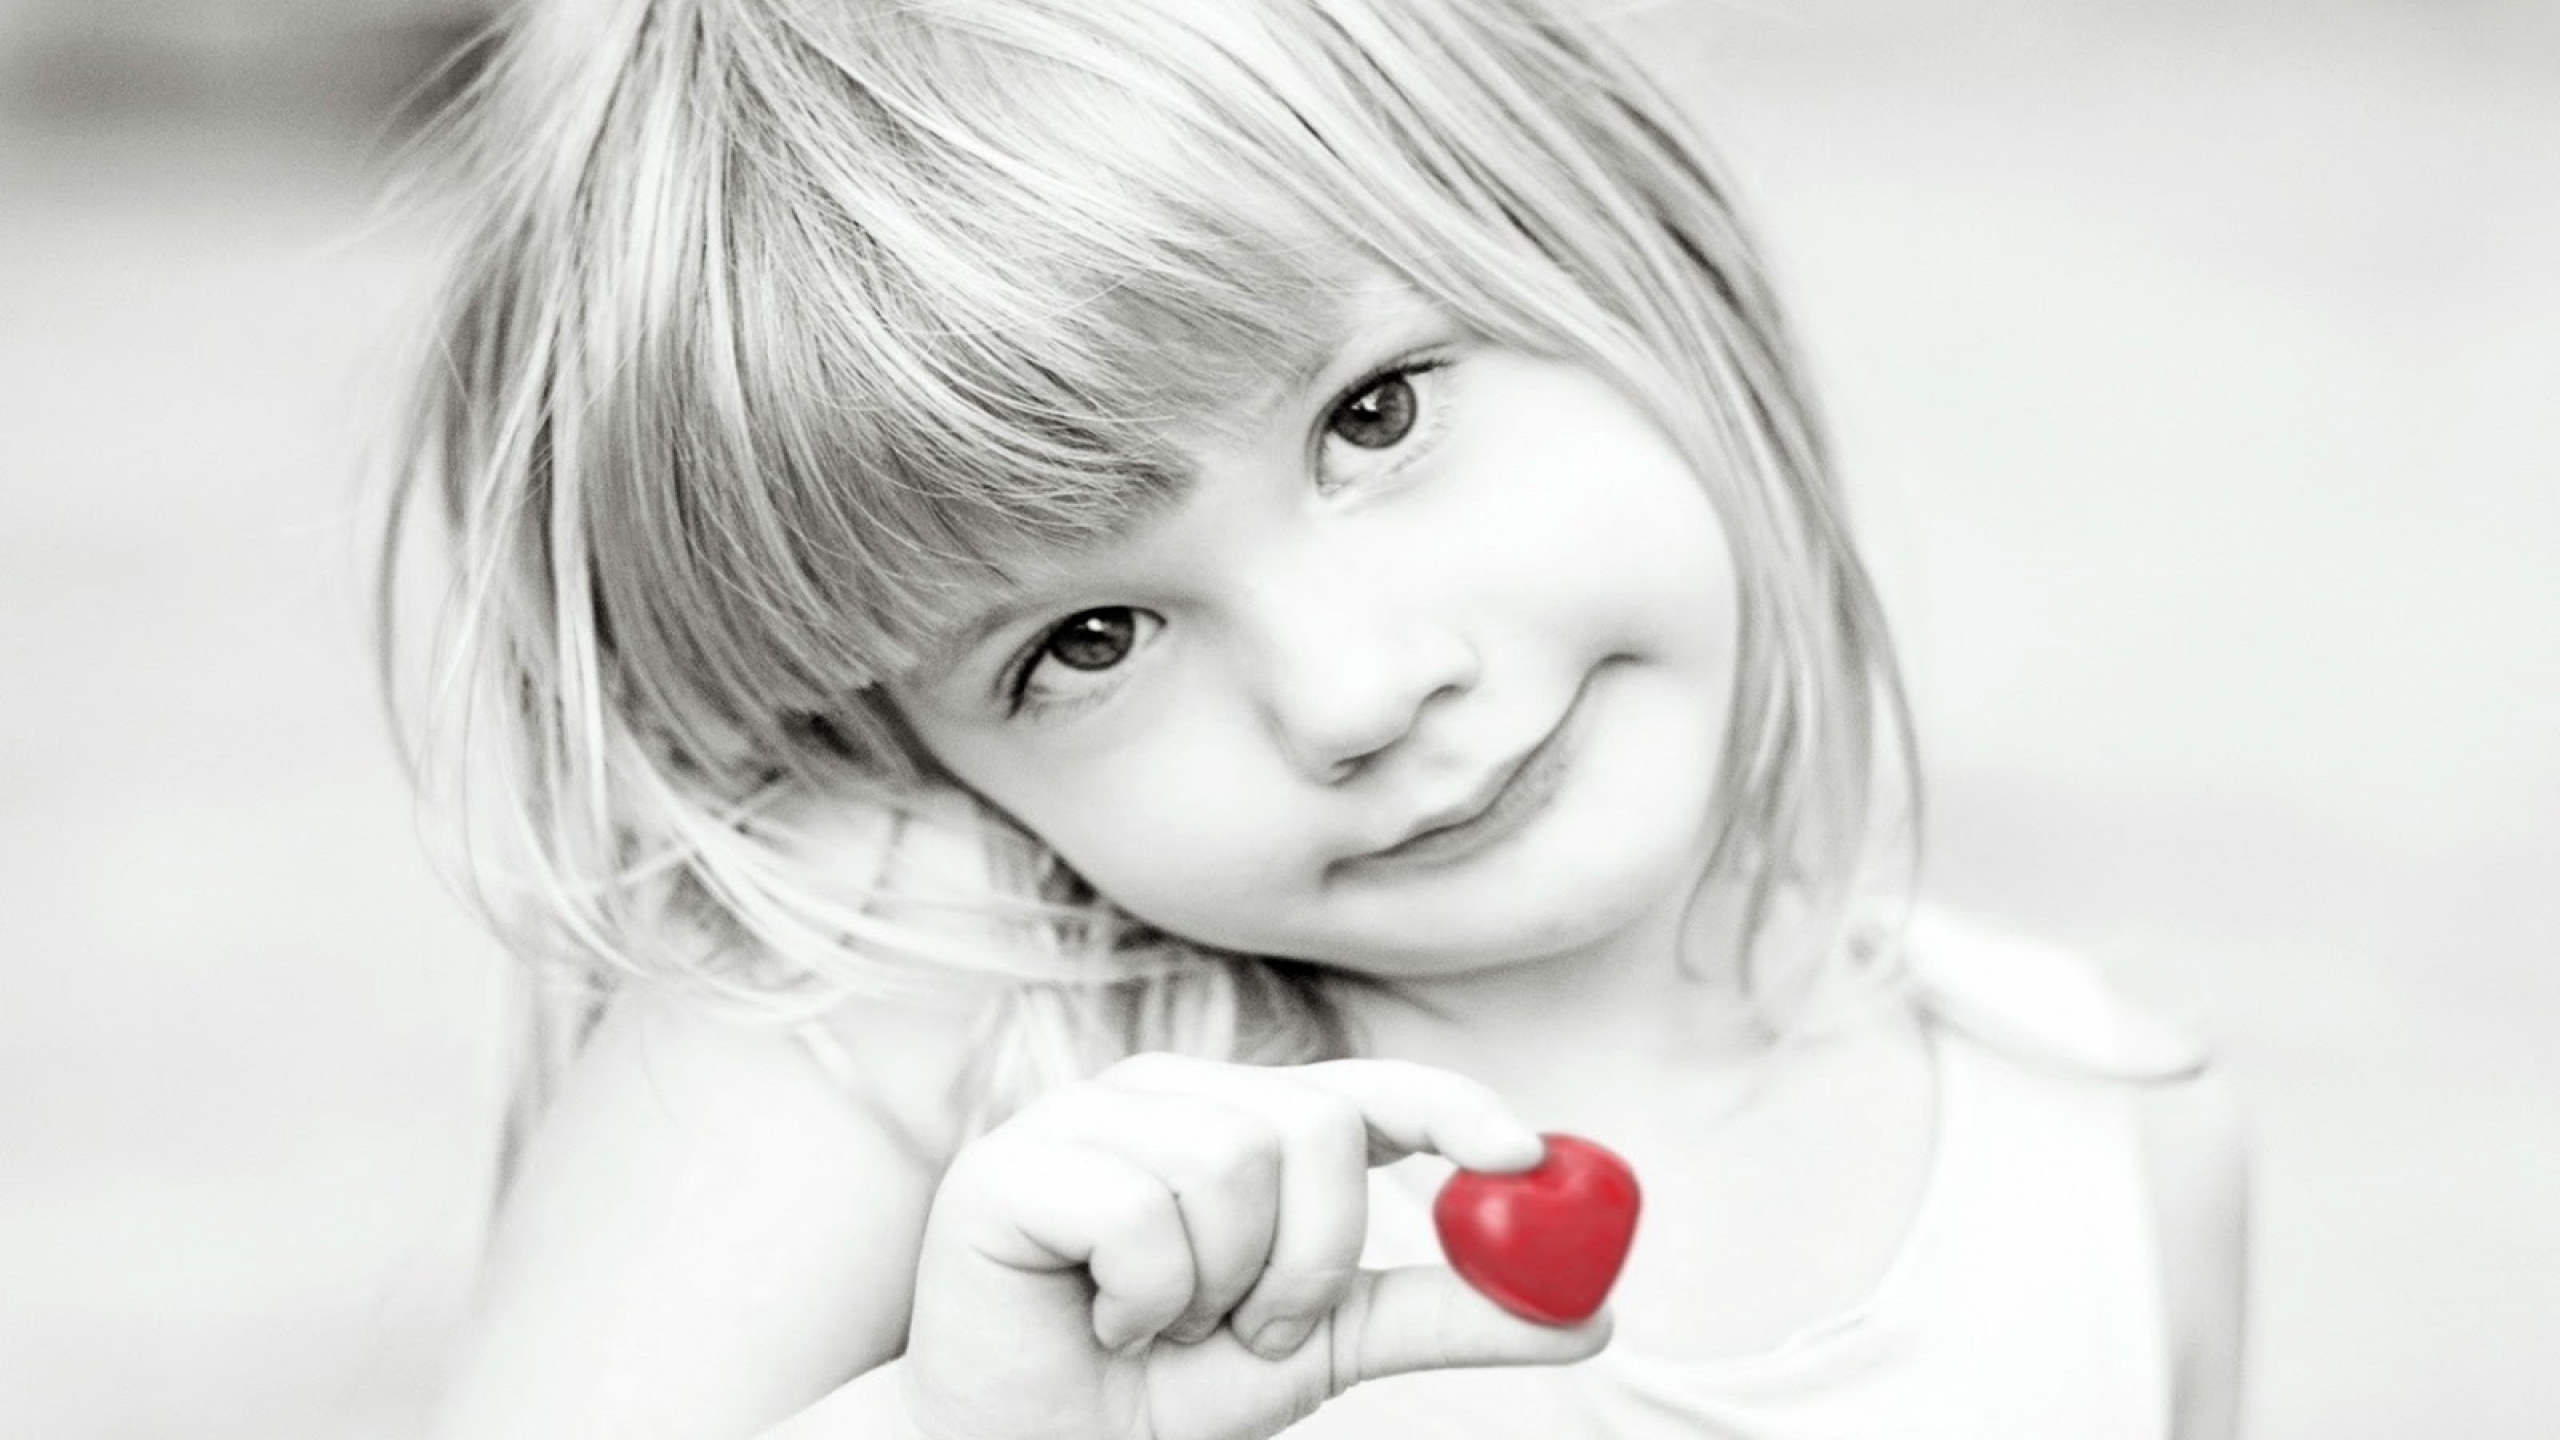 Little Girl Holding A Heart , HD Wallpaper & Backgrounds